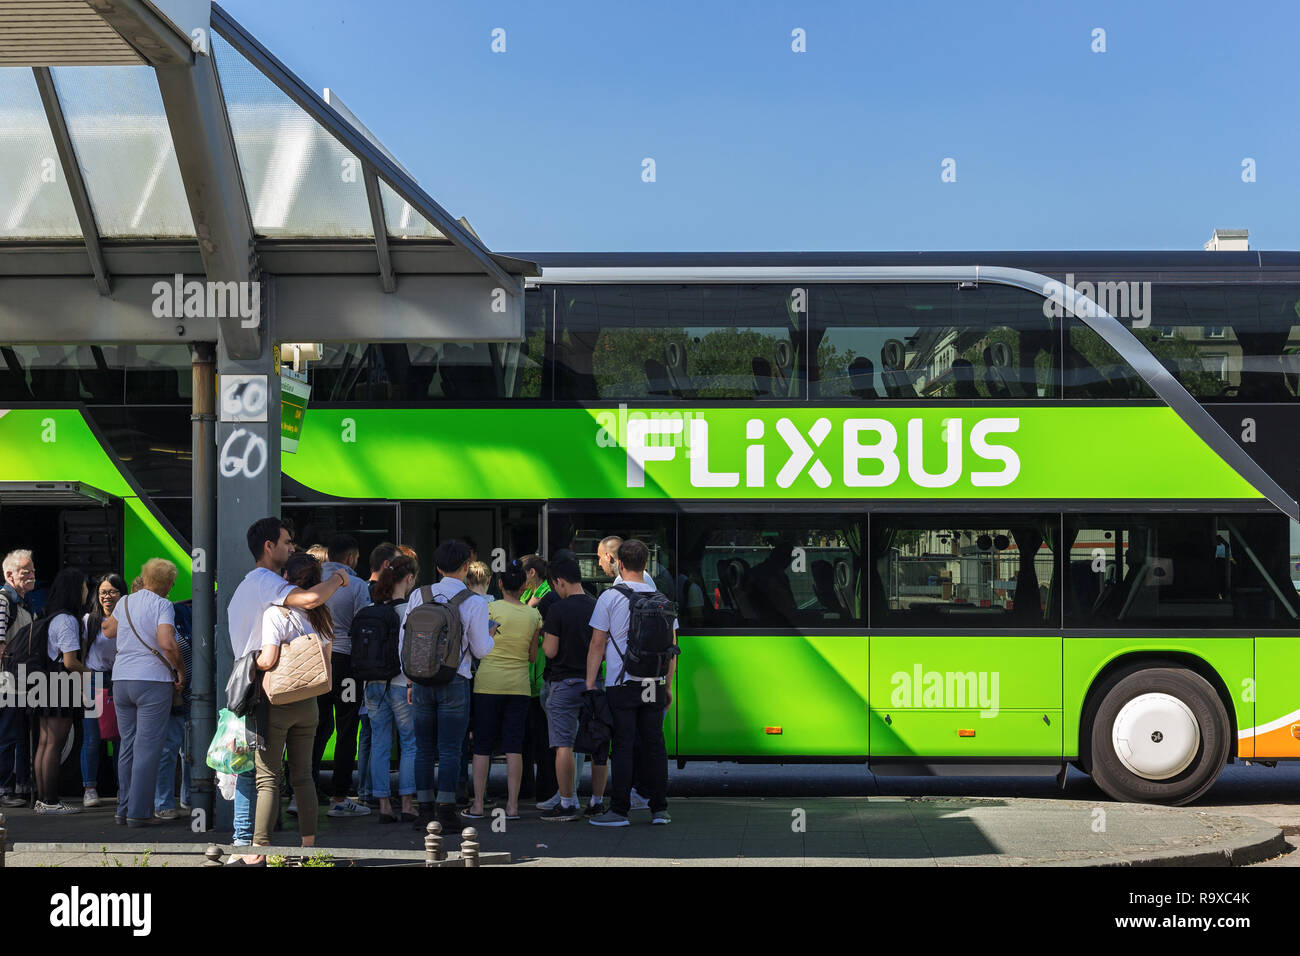 08.05.2018, Berlino, Deutschland - Autobus des Fernbusunternehmens Flixbus am Zentralen Omnibusbahnhof Berlino. 0MC180508D407CARO [modello di rilascio: NO, corretto Foto Stock